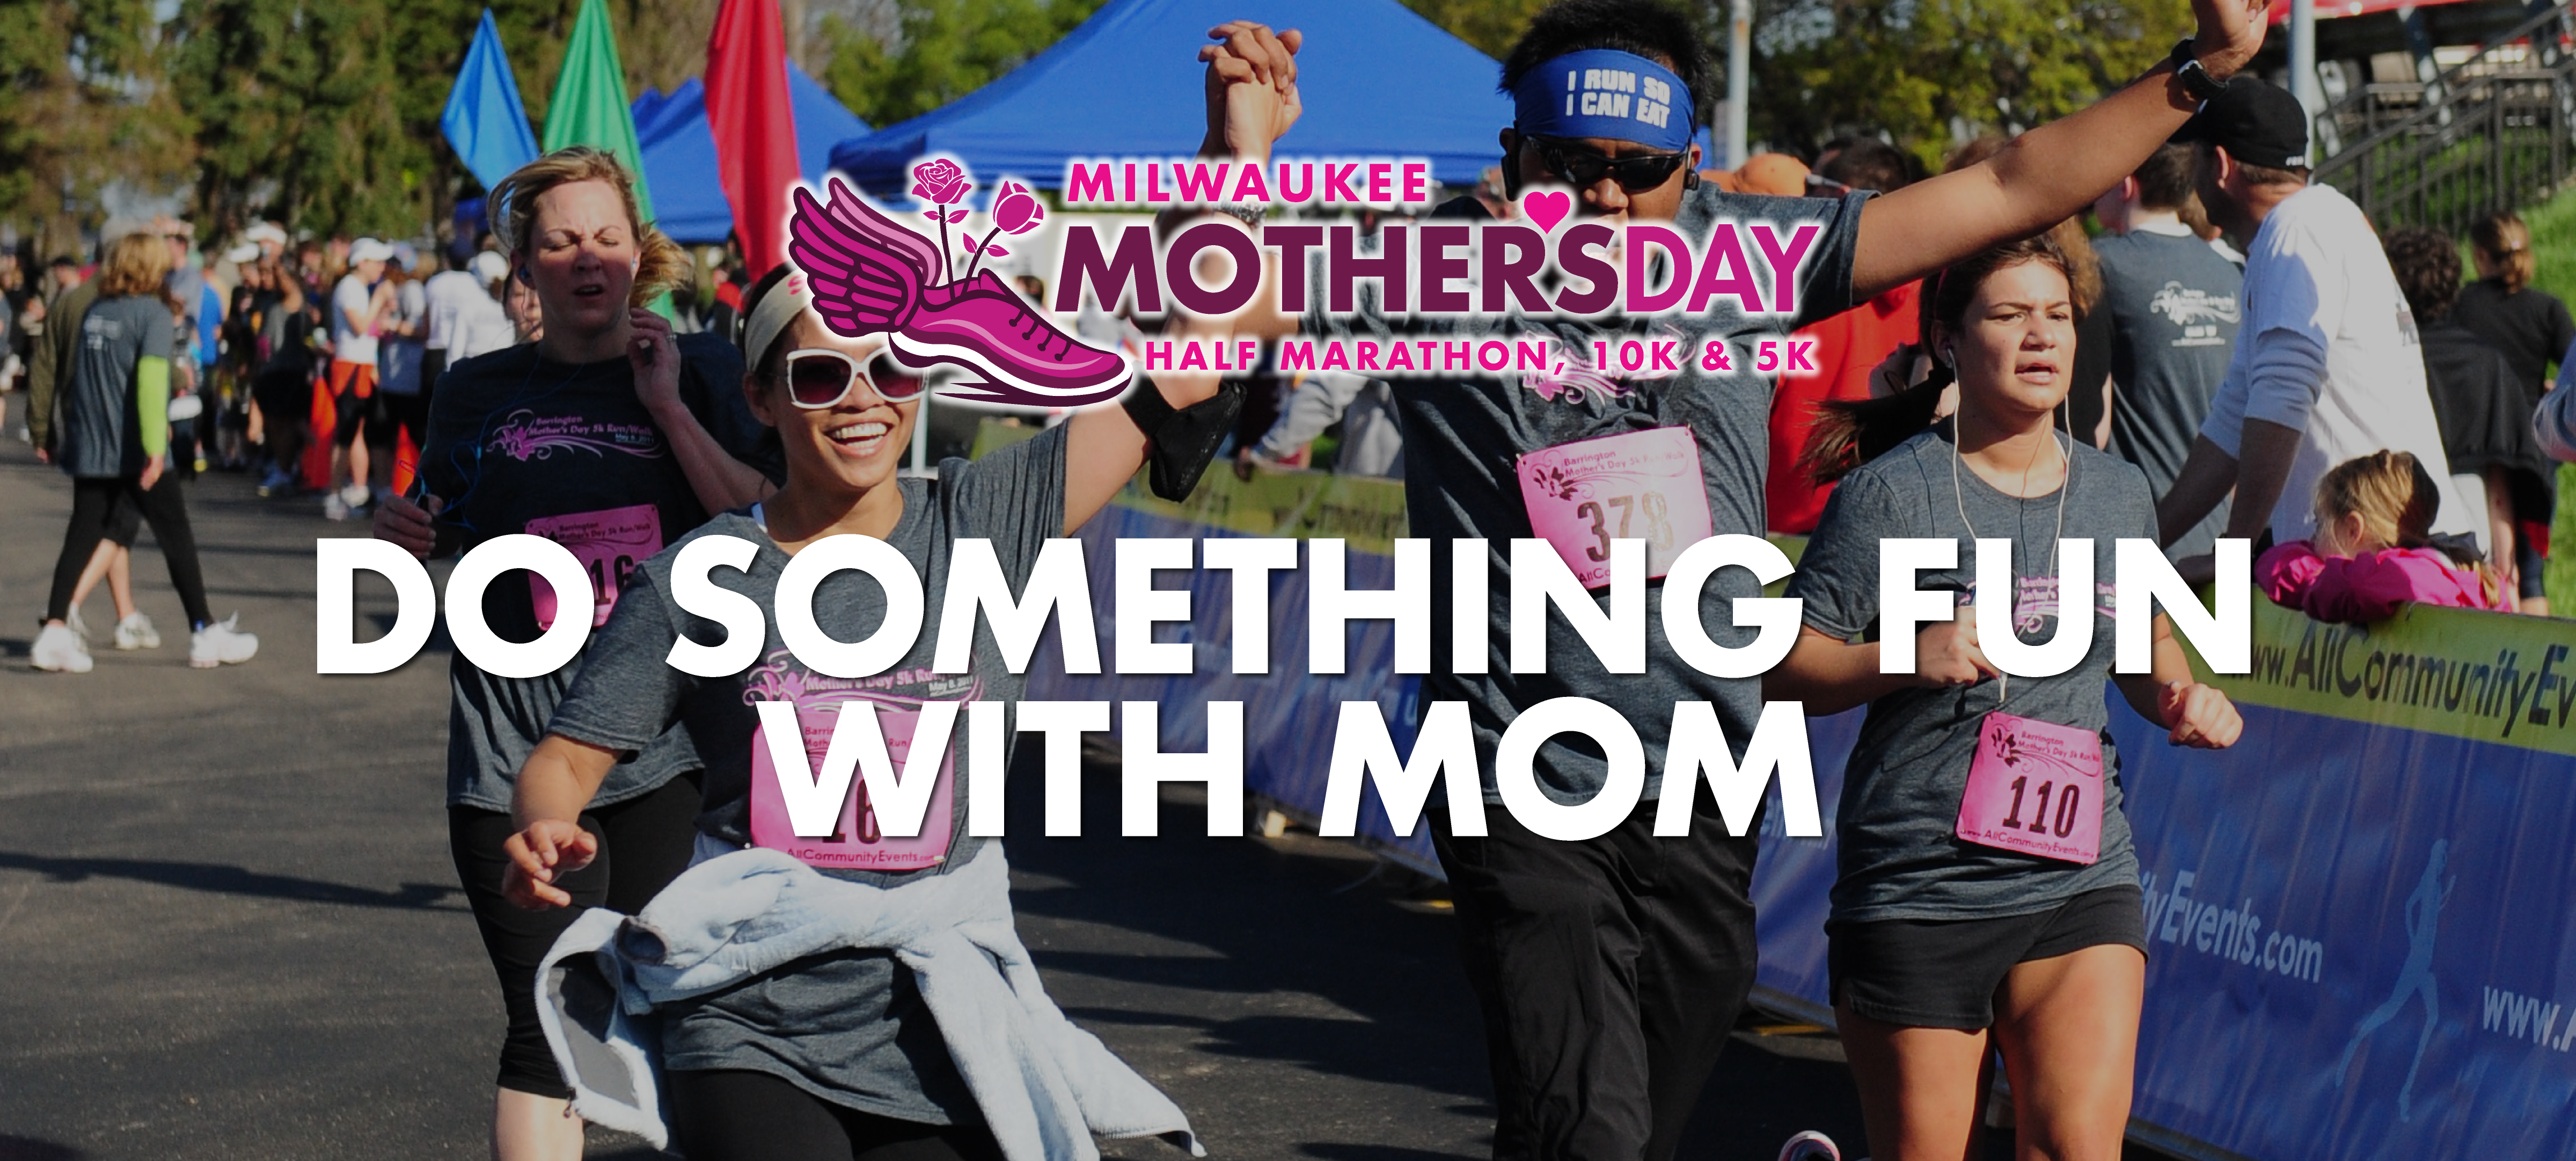 Milwaukee Mother’s Day 5K, 10K & Half Marathon